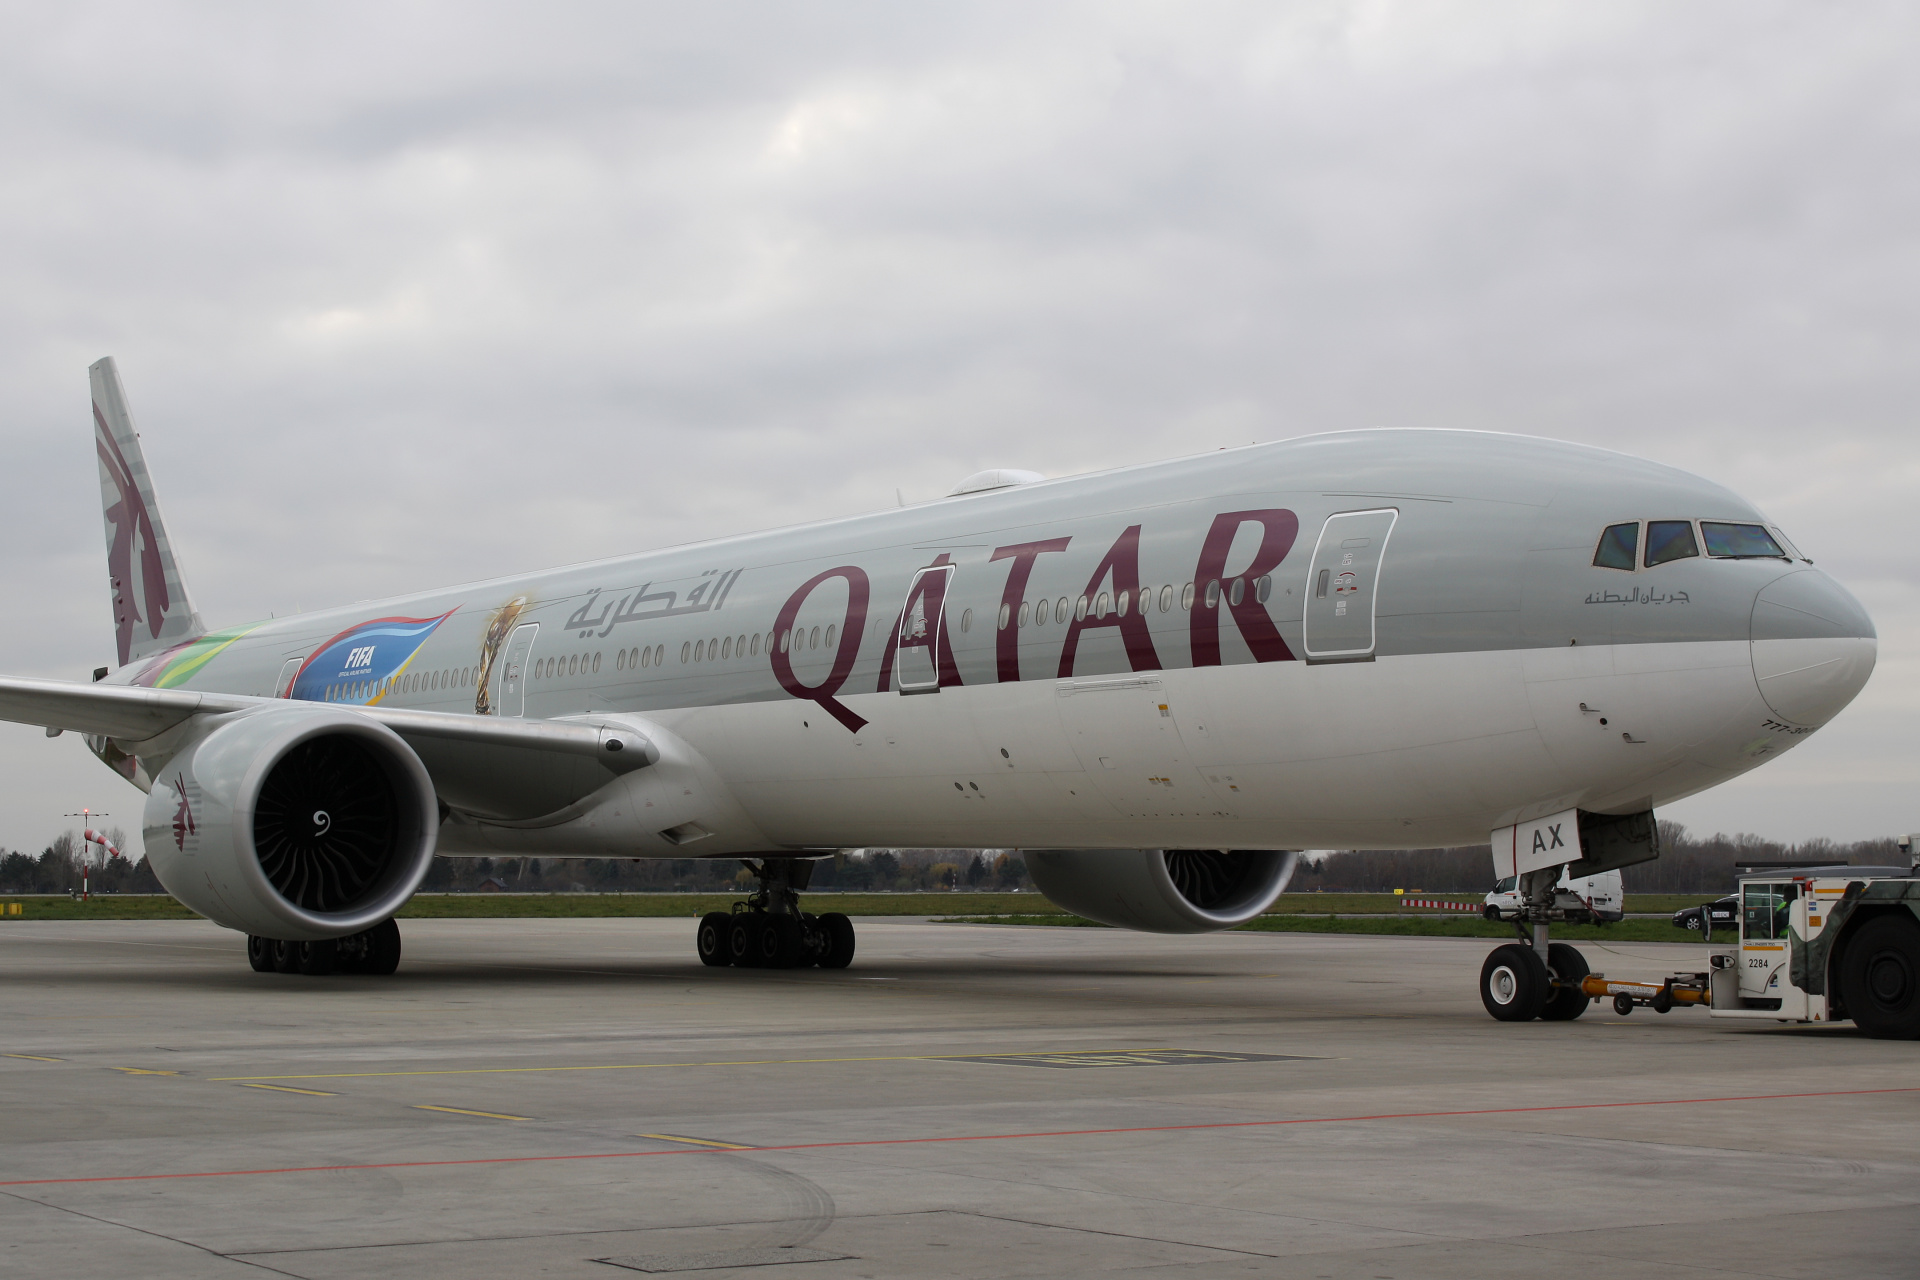 A7-BAX (malowanie Mistrzostw Świata FIFA 2022) (Samoloty » Spotting na EPWA » Boeing 777-300ER » Qatar Airways)